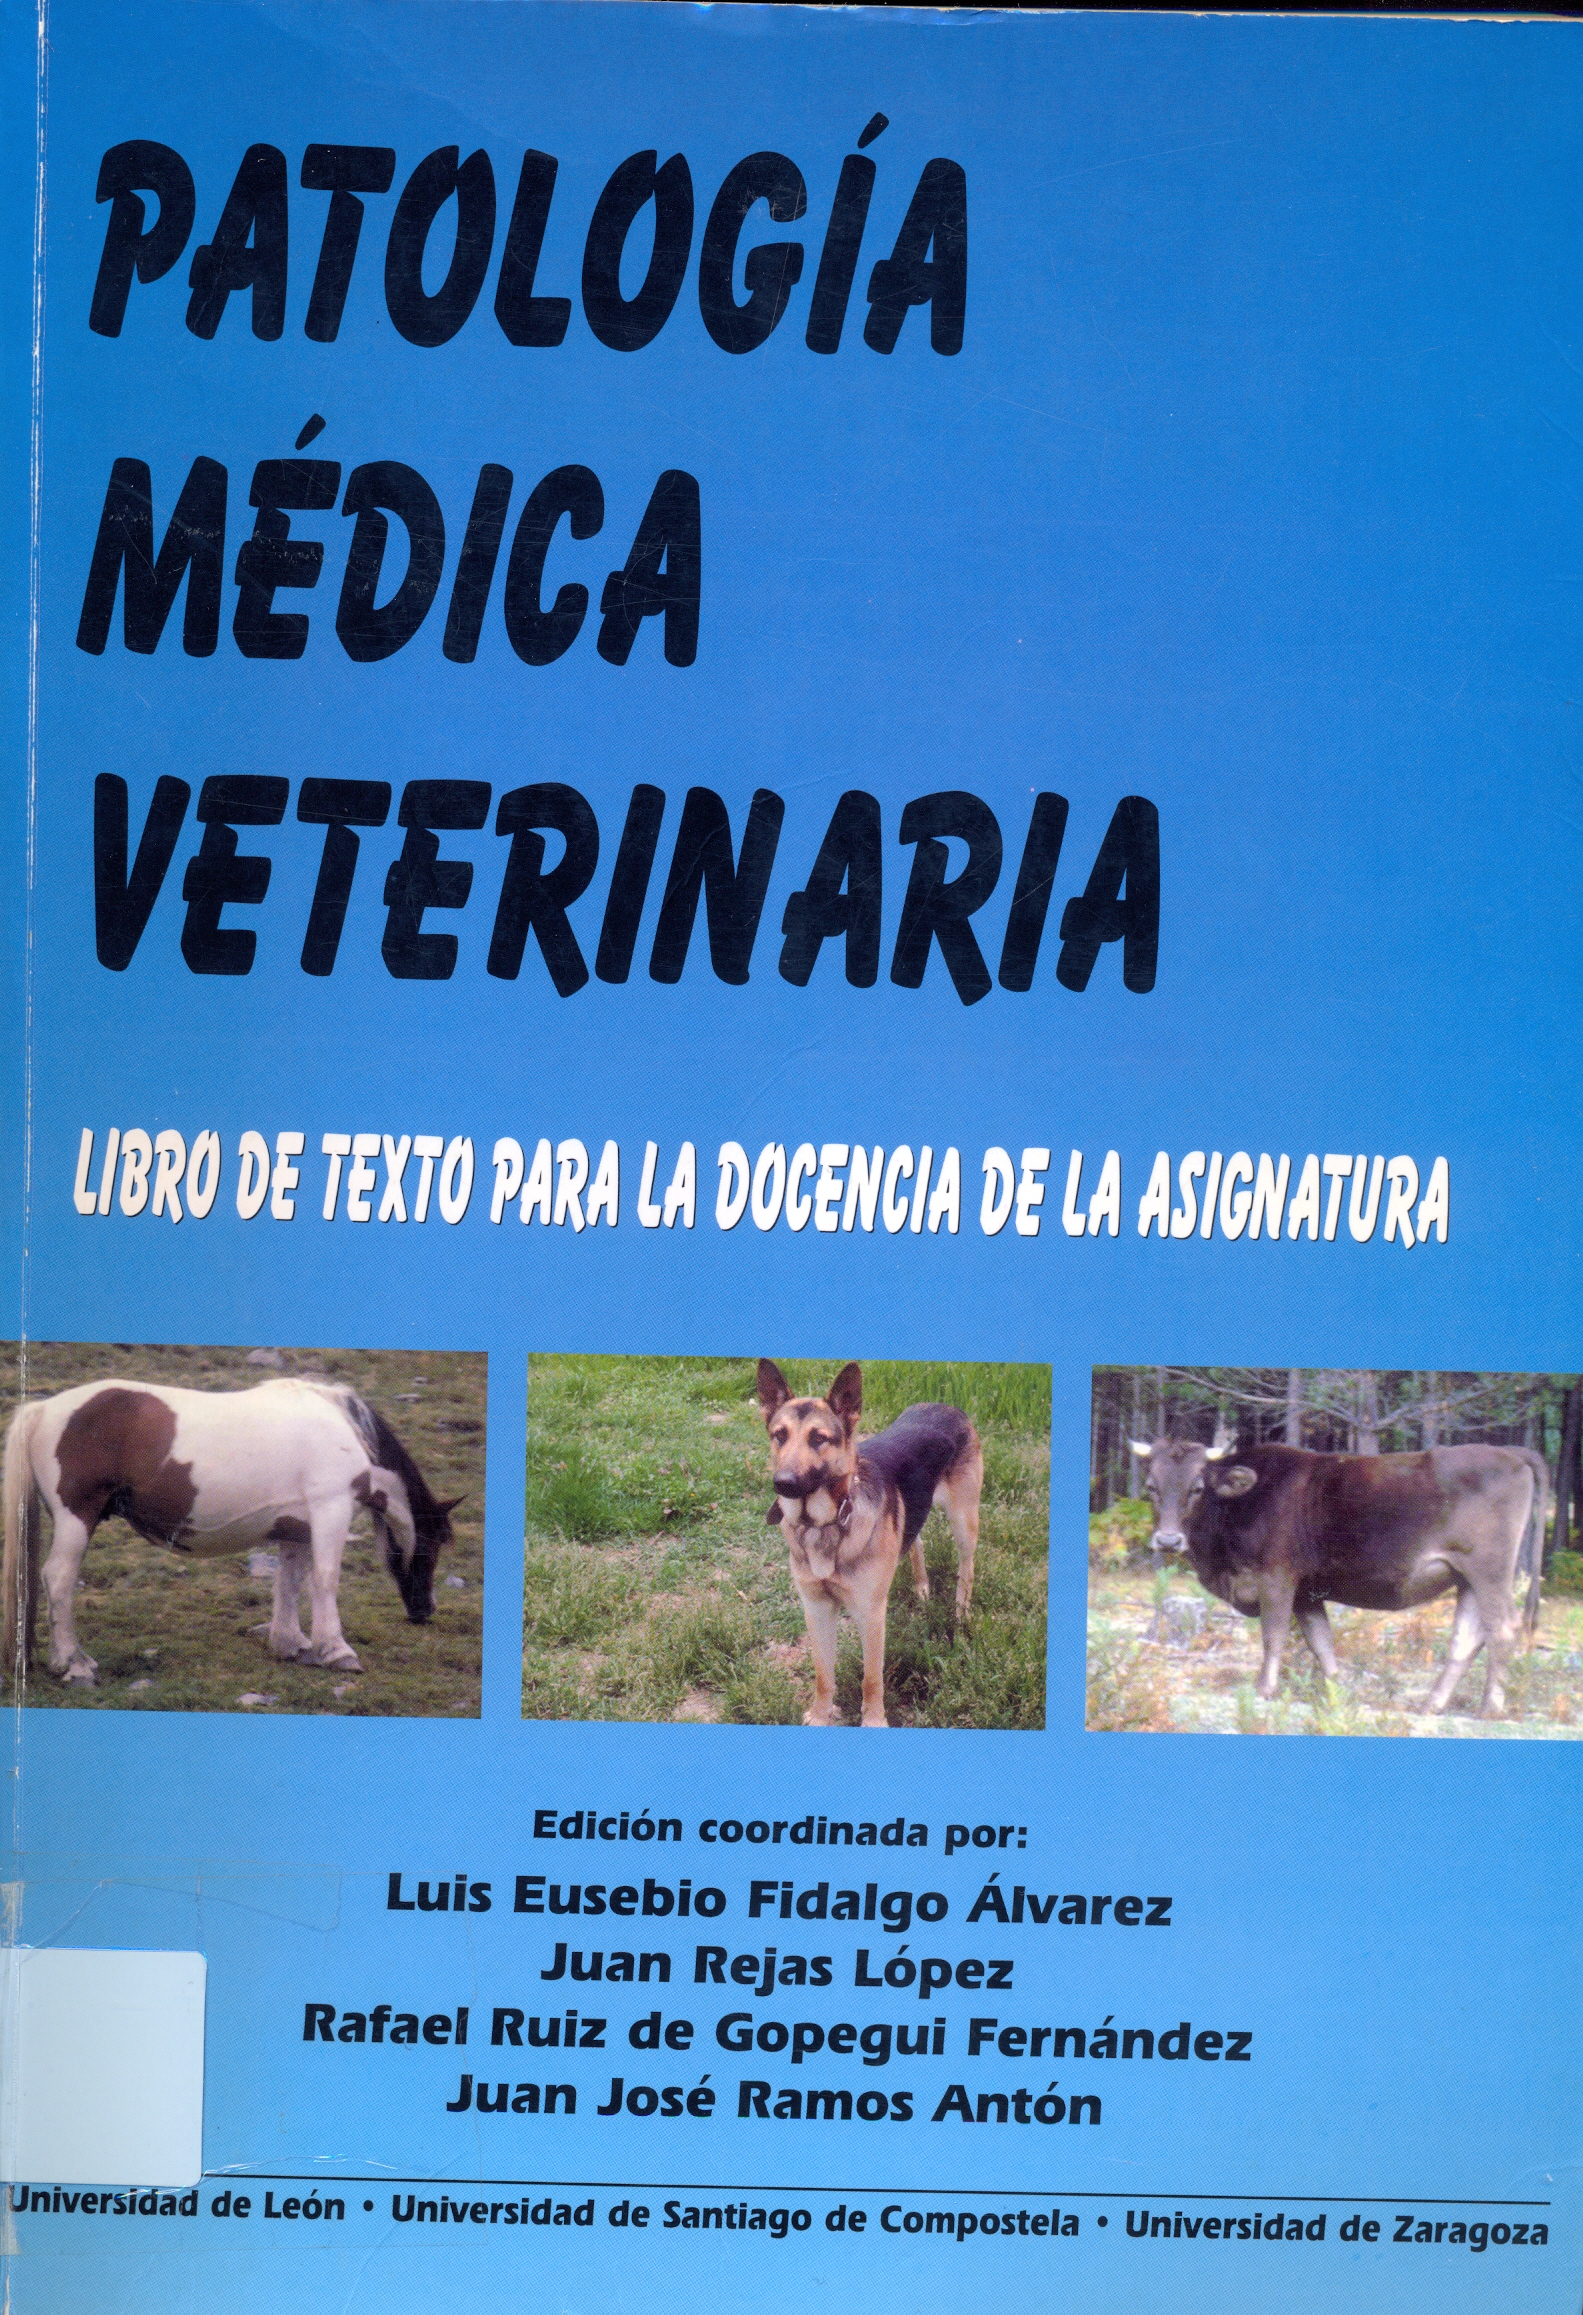 Patología médica veterinaria: libro de texto para la docencia de la asignatura - Dialnet